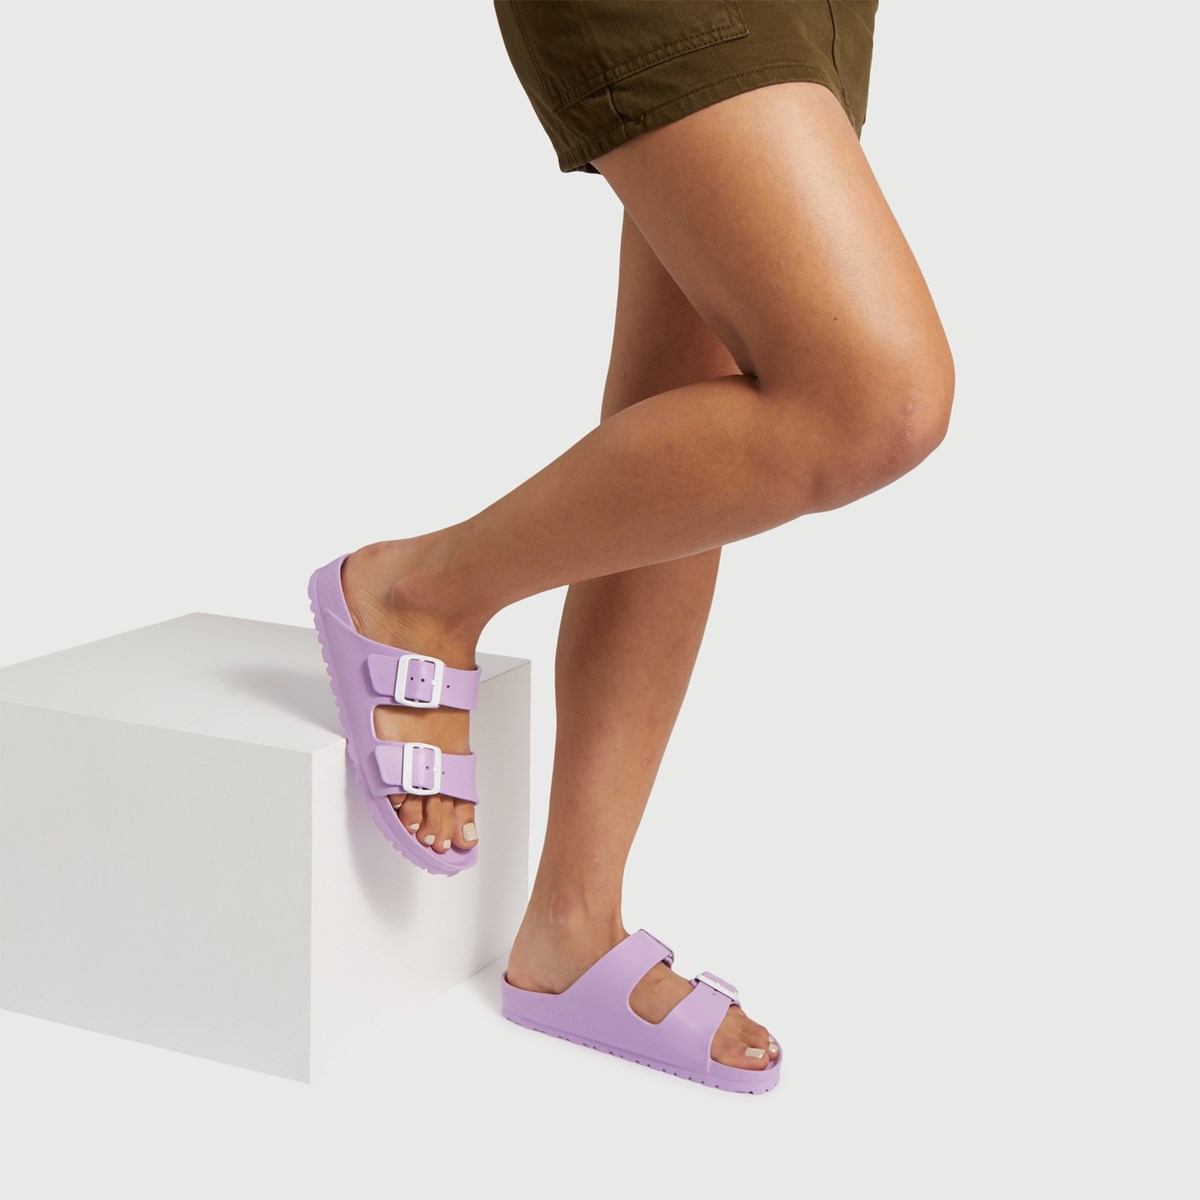 lavender birkenstock sandals